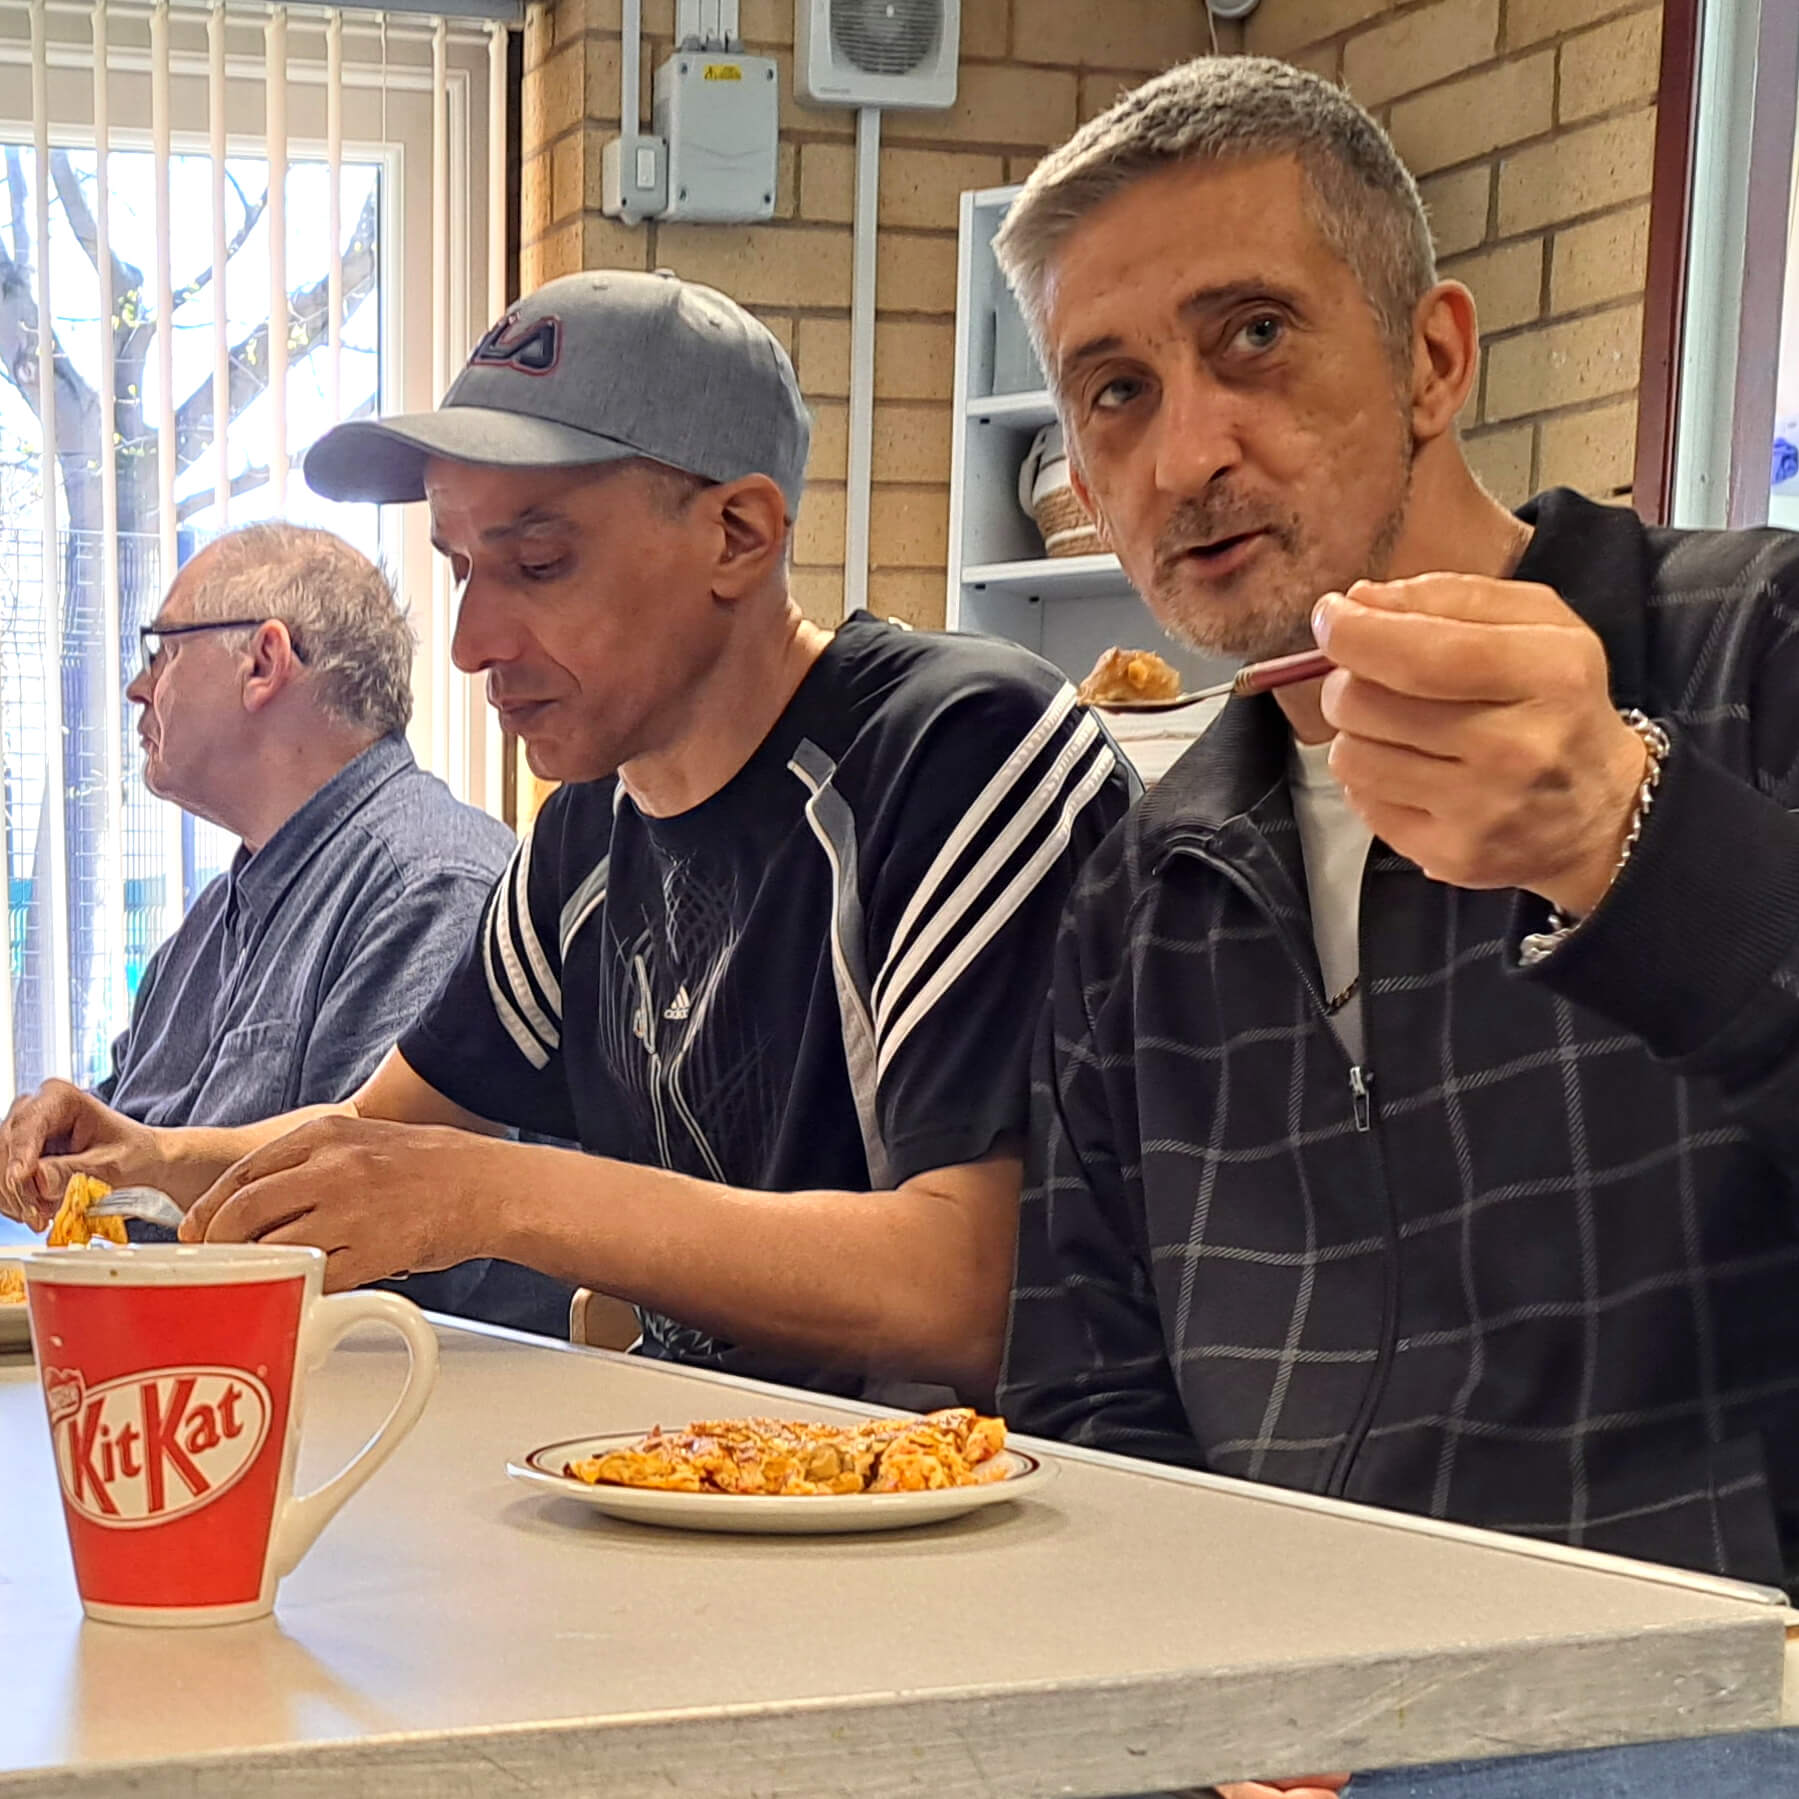 Three men at a table eating.